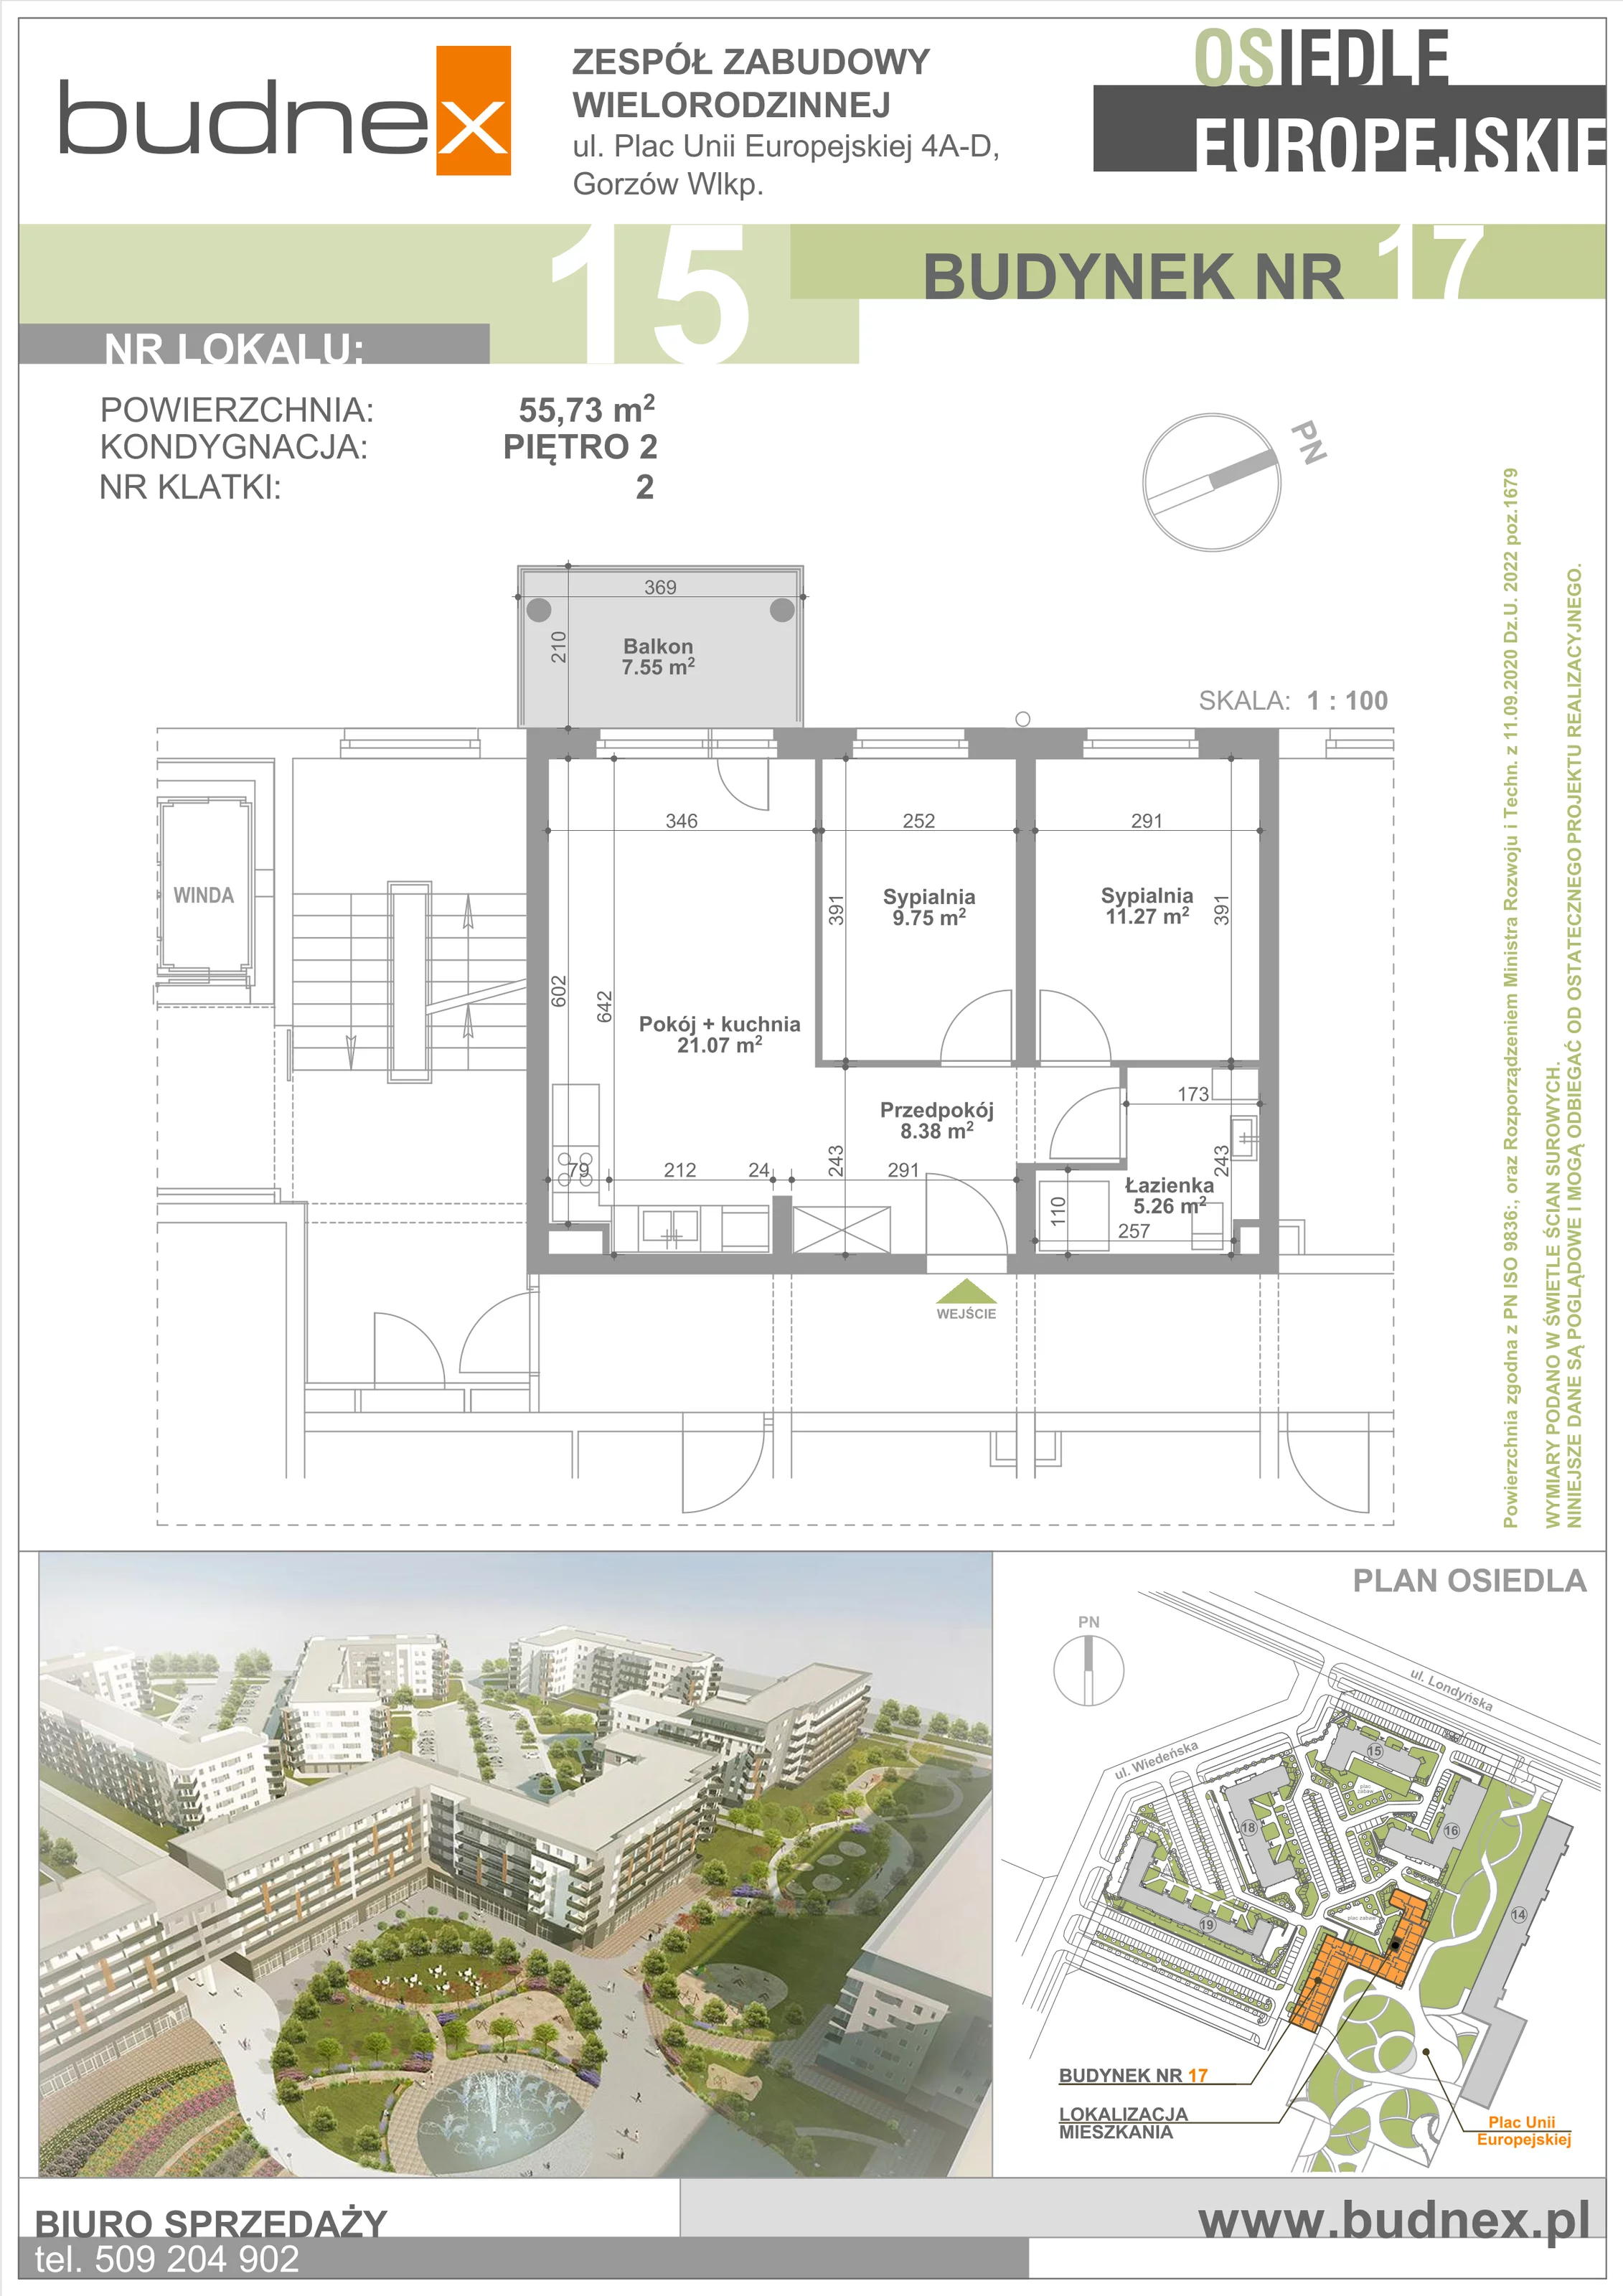 Mieszkanie 55,73 m², piętro 2, oferta nr 2/M15, Osiedle Europejskie - Budynek 17, Gorzów Wielkopolski, Plac Unii Europejskiej 4A-D